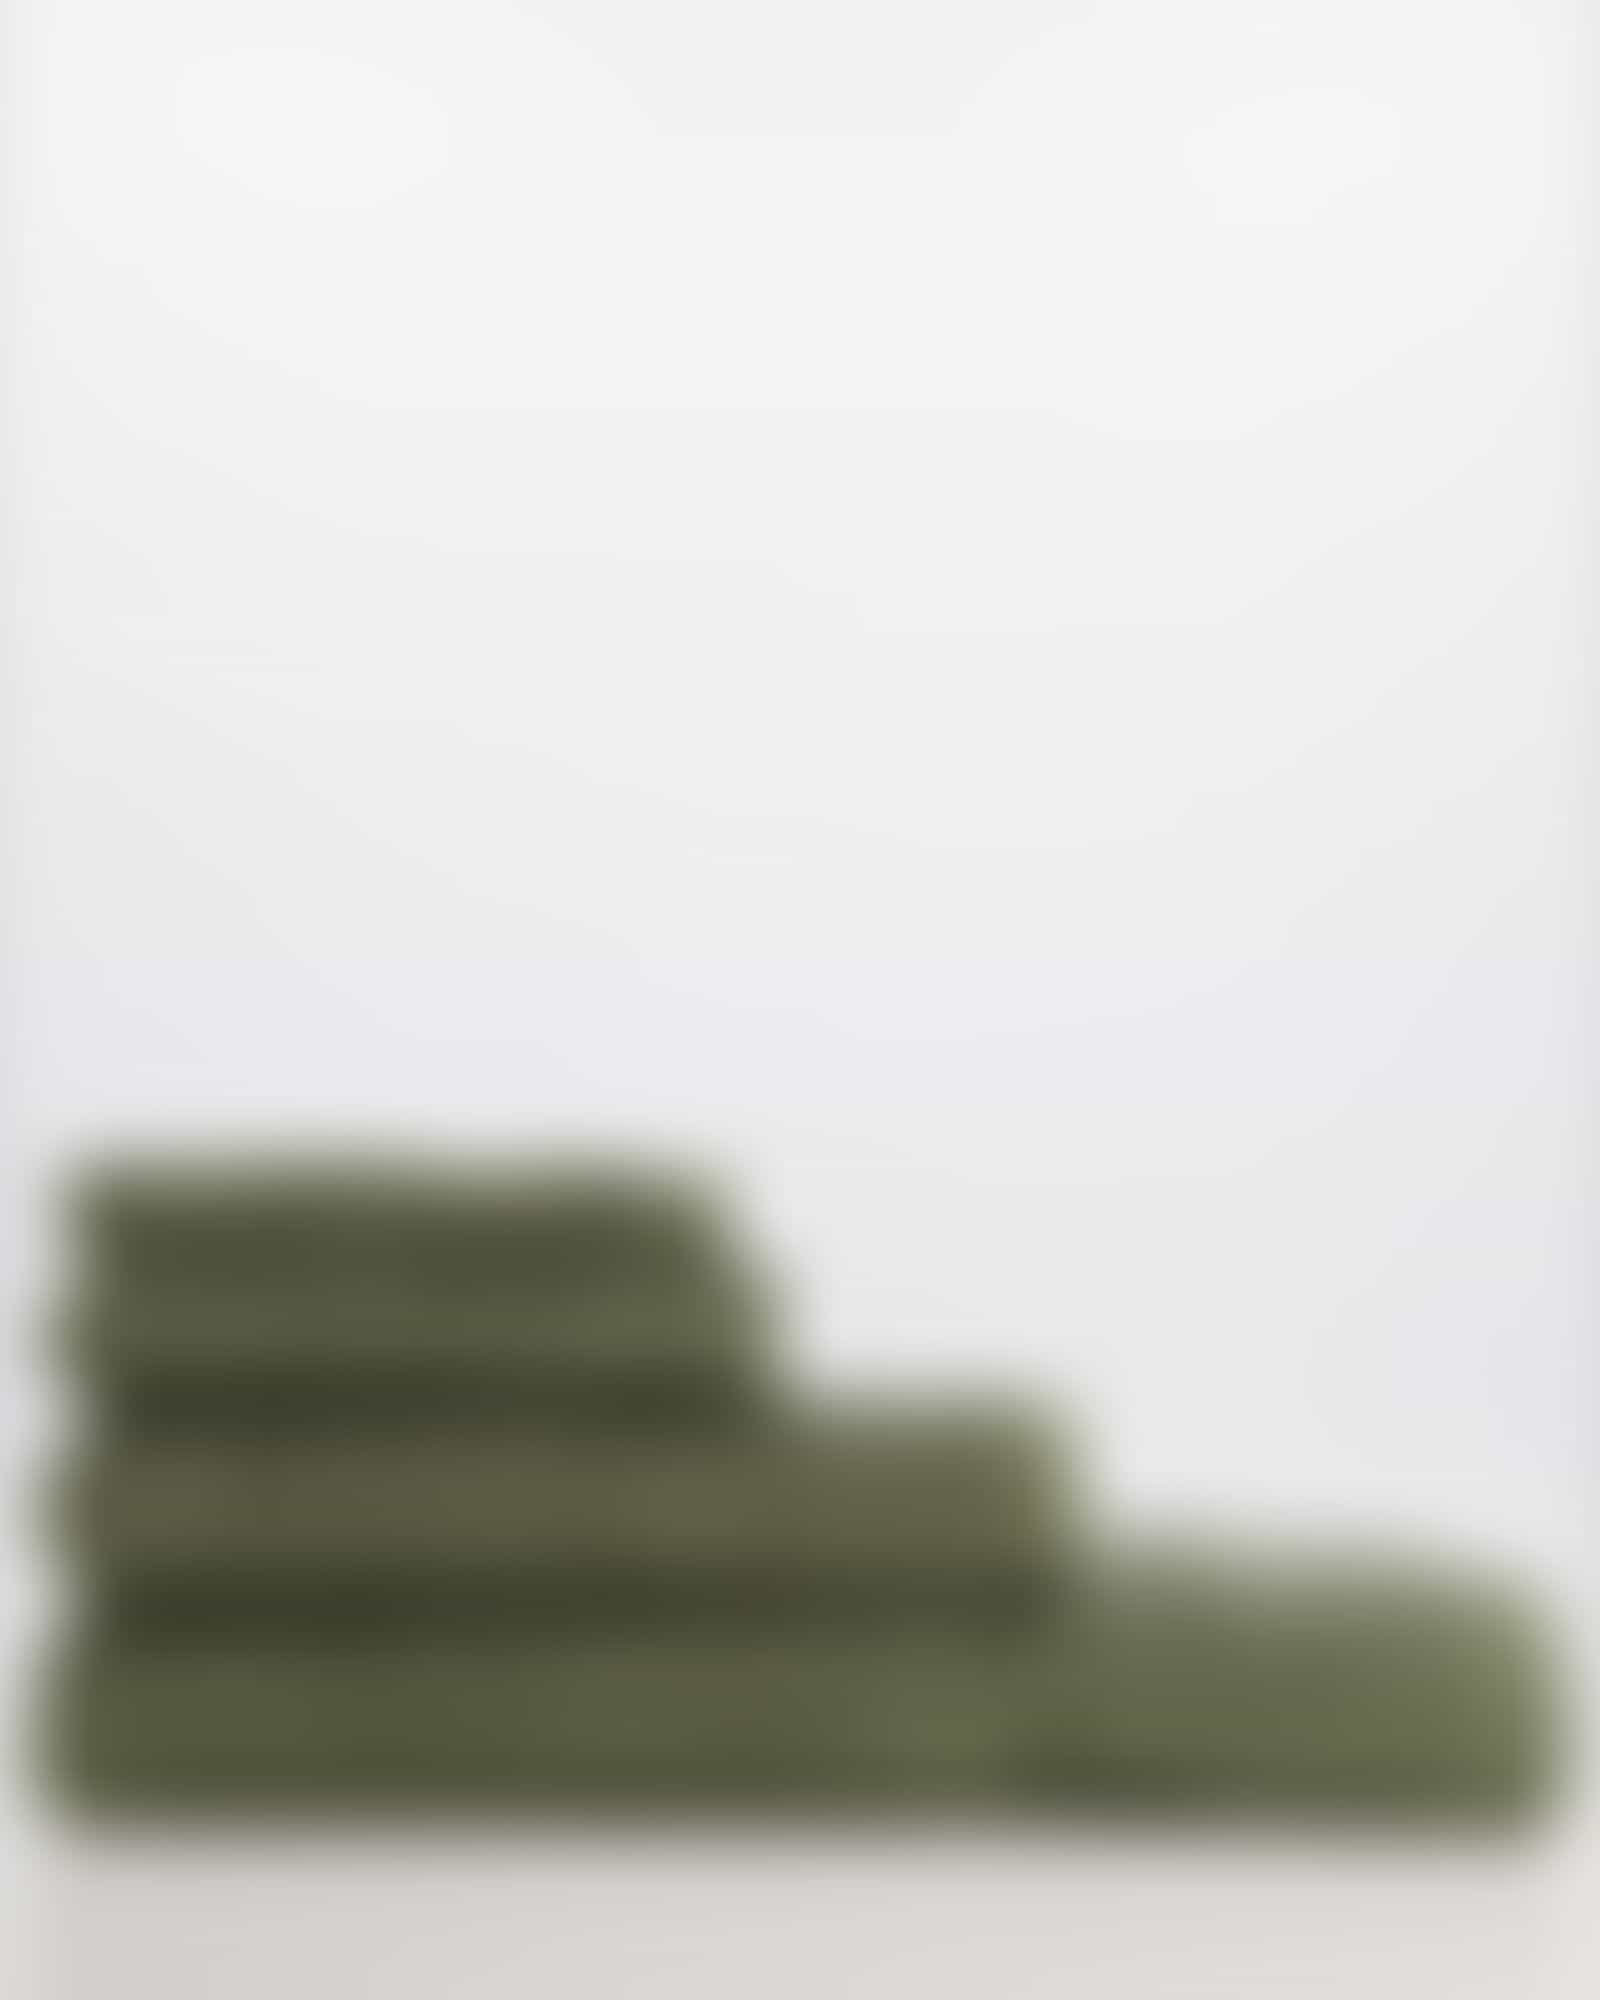 Villeroy &amp; Boch Handtücher One 2550 - Farbe: olive green - 453 - Duschtuch 80x150 cm